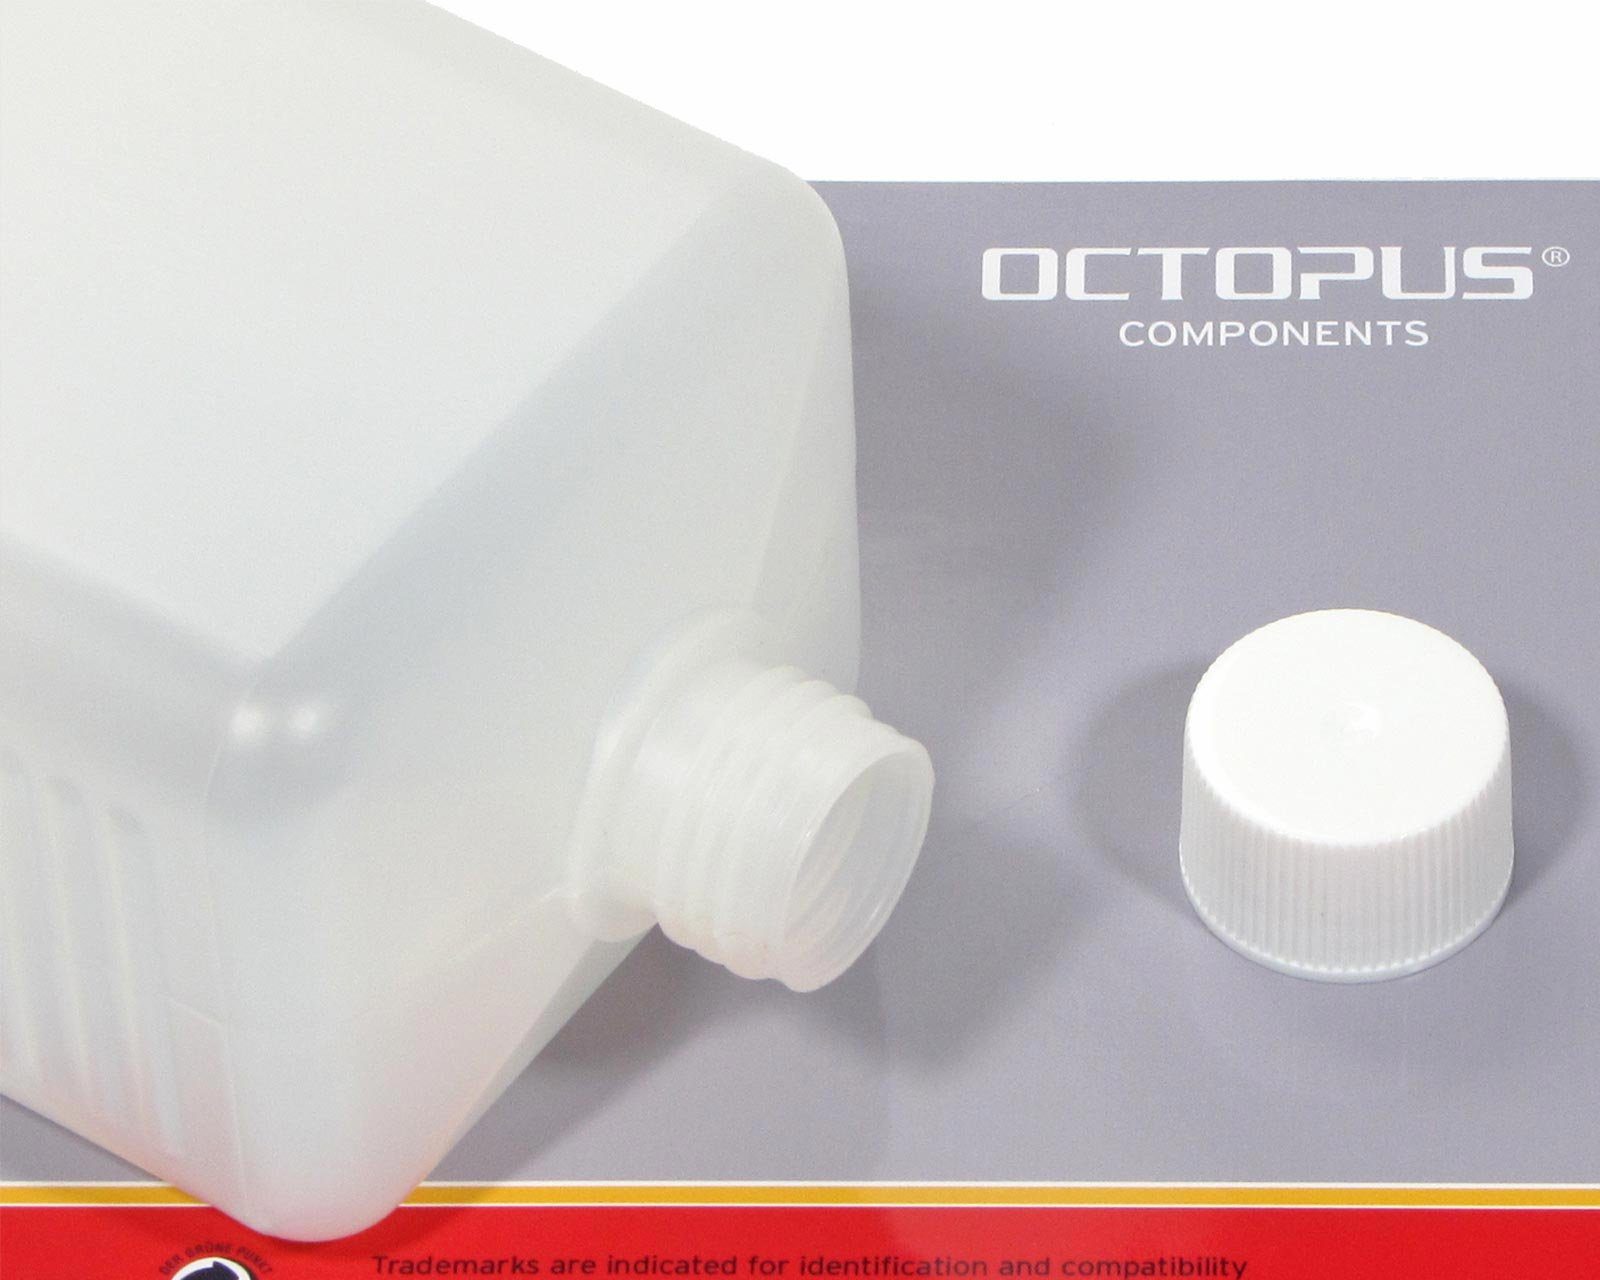 Kanister 1.000 (5 ml weißen St) eckig HDPE 5 aus OCTOPUS mit Plastikflaschen Schraubverschlüss